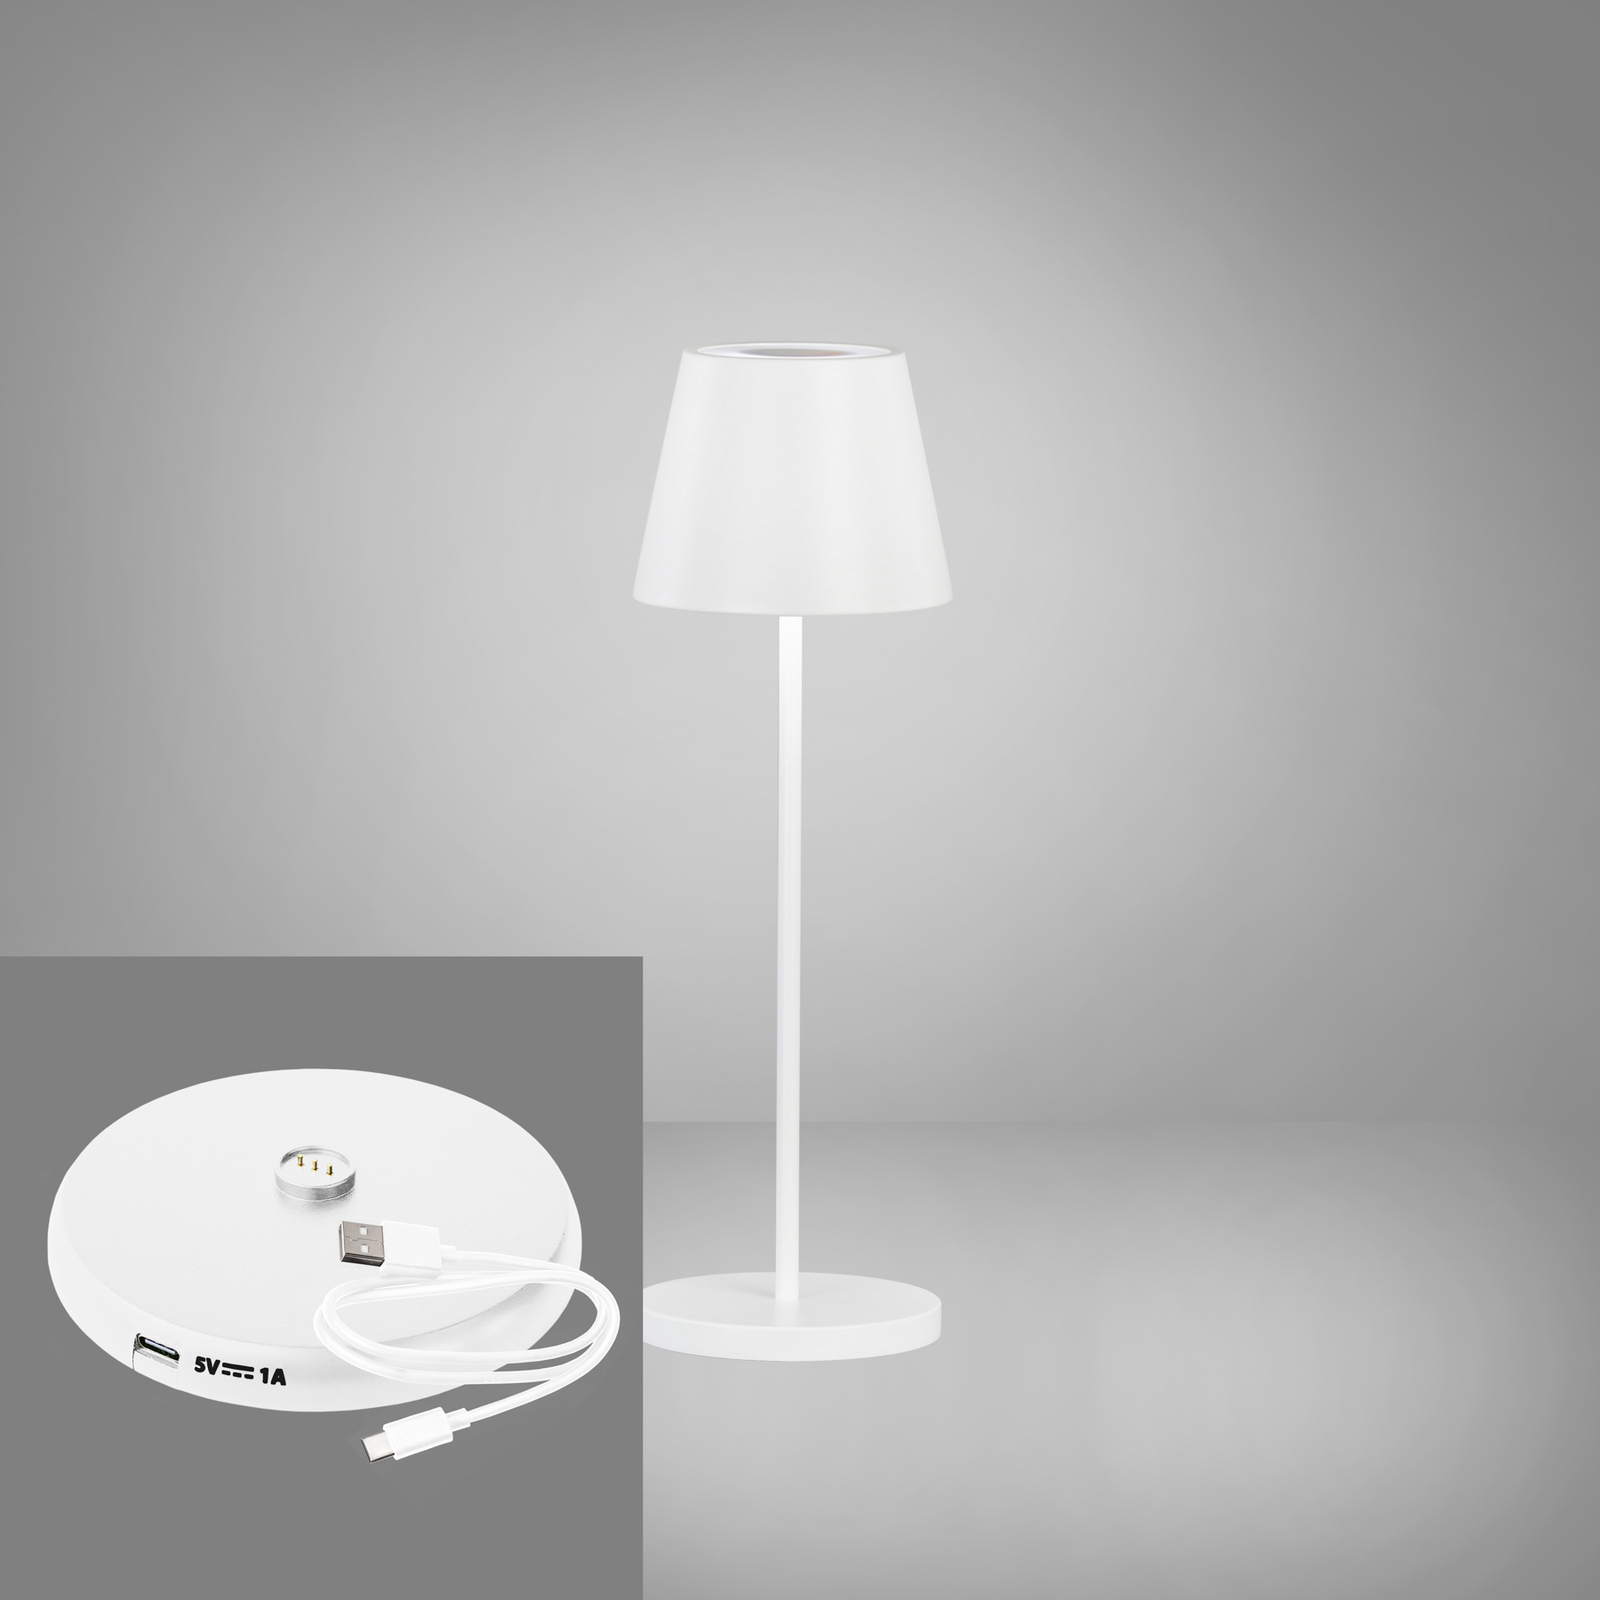 LED baterijska stolna lampa Cosenza 2.0 visina 34cm pješčano bijela